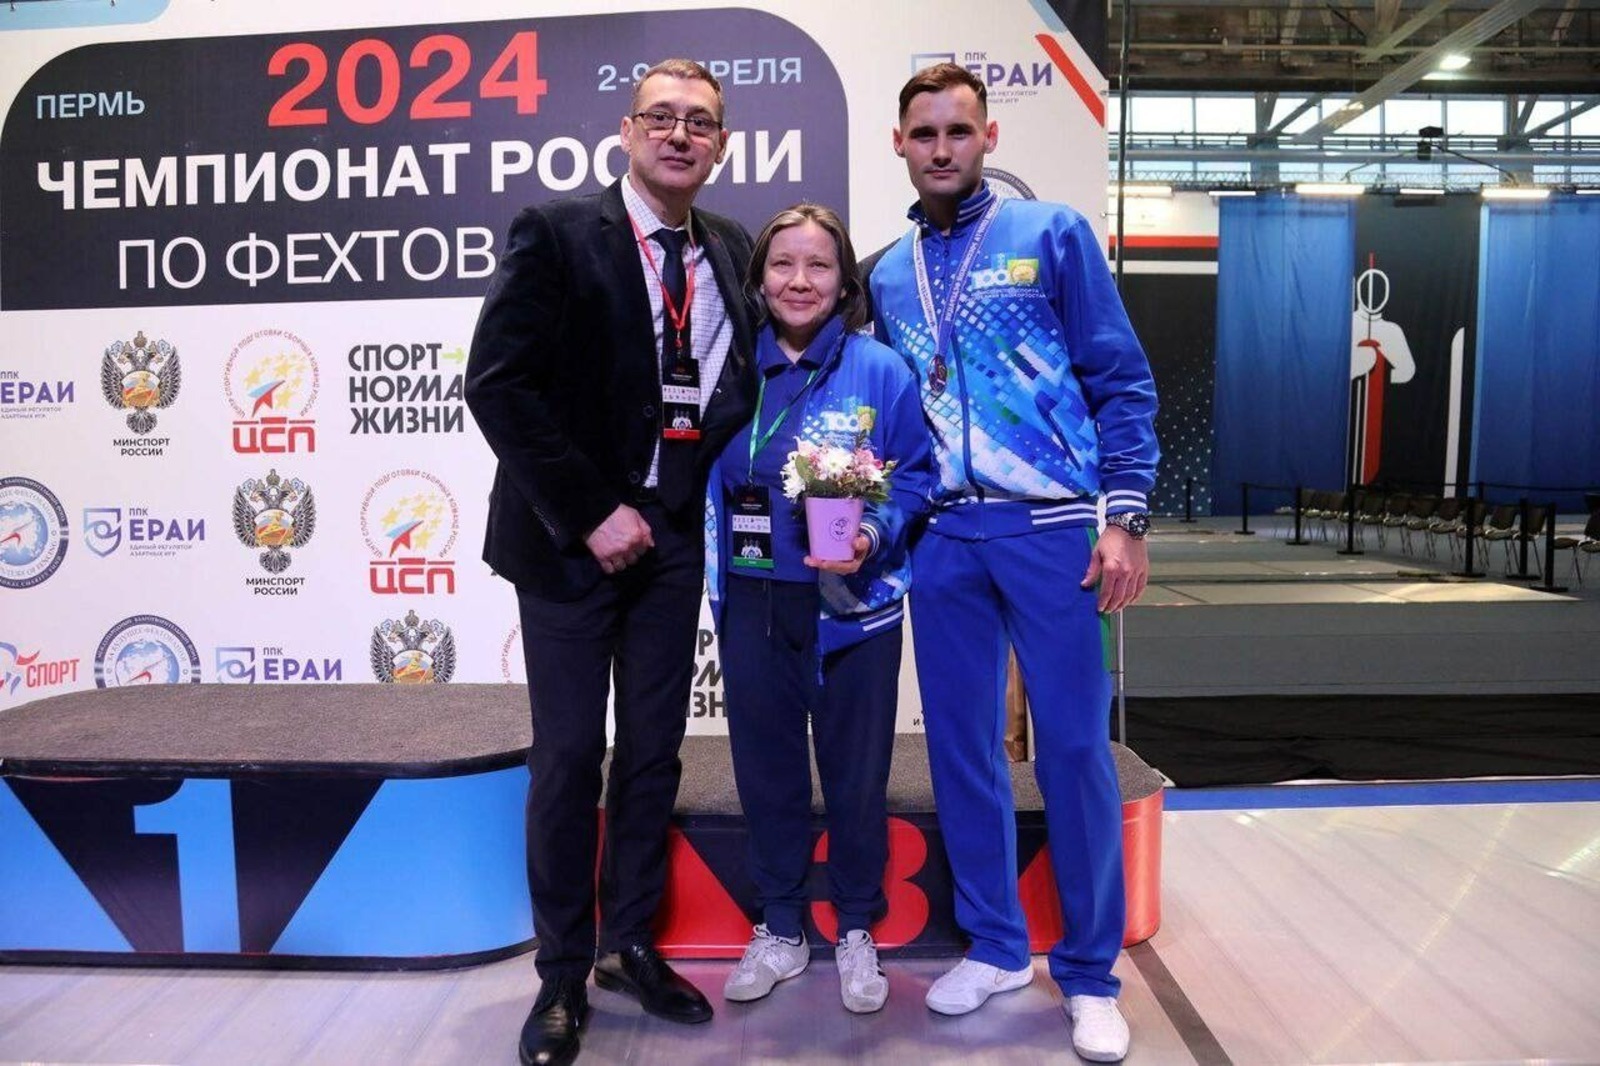 Тимур Сафин из Уфы стал бронзовым призёром чемпионата России по фехтованию